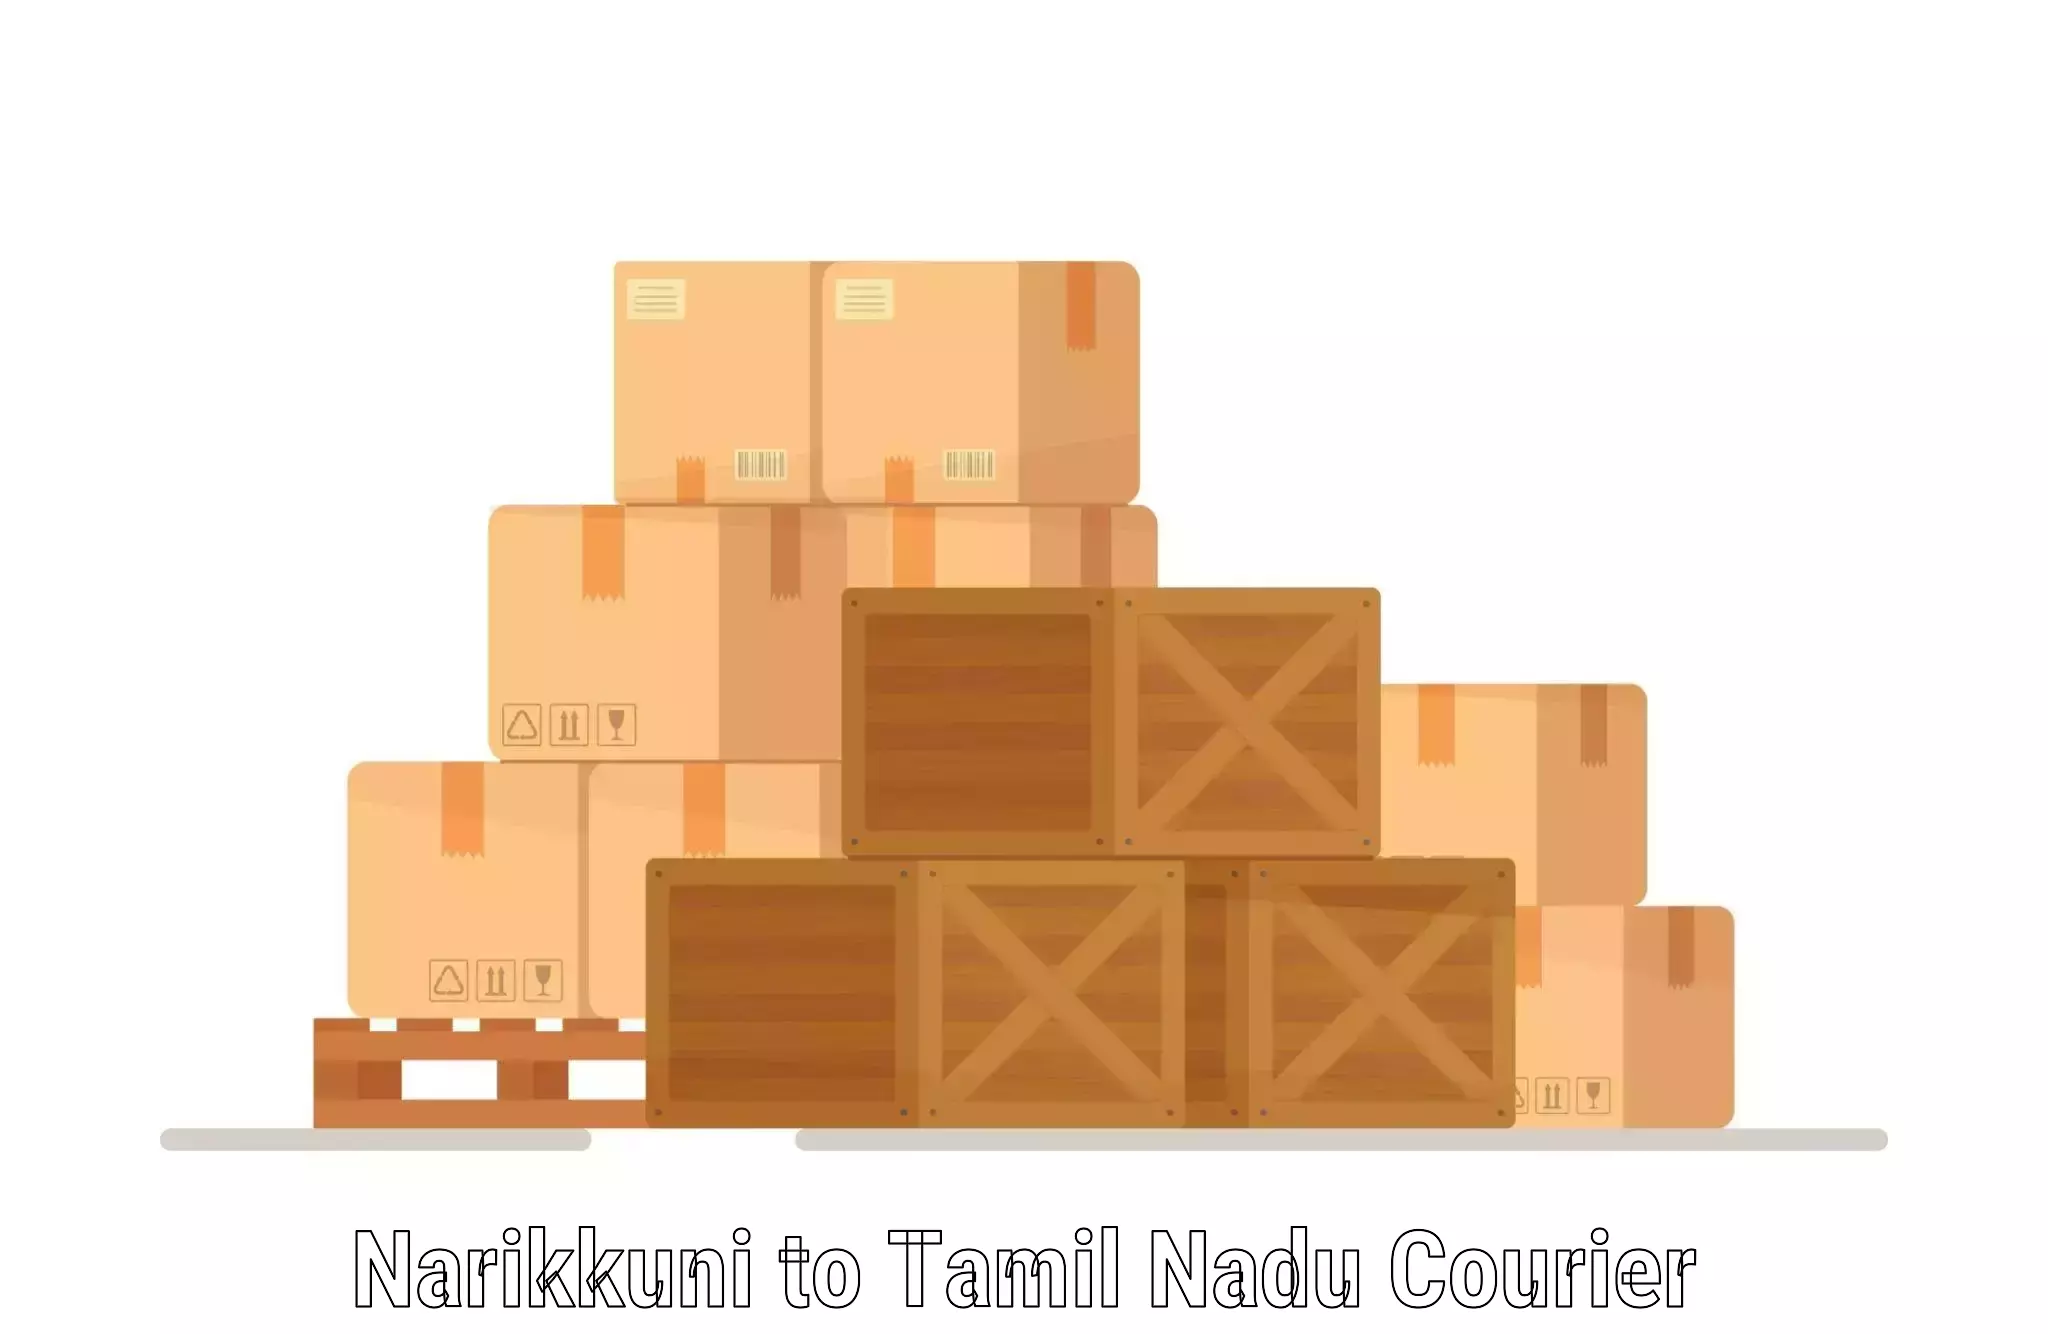 Flexible courier rates Narikkuni to Tamil Nadu